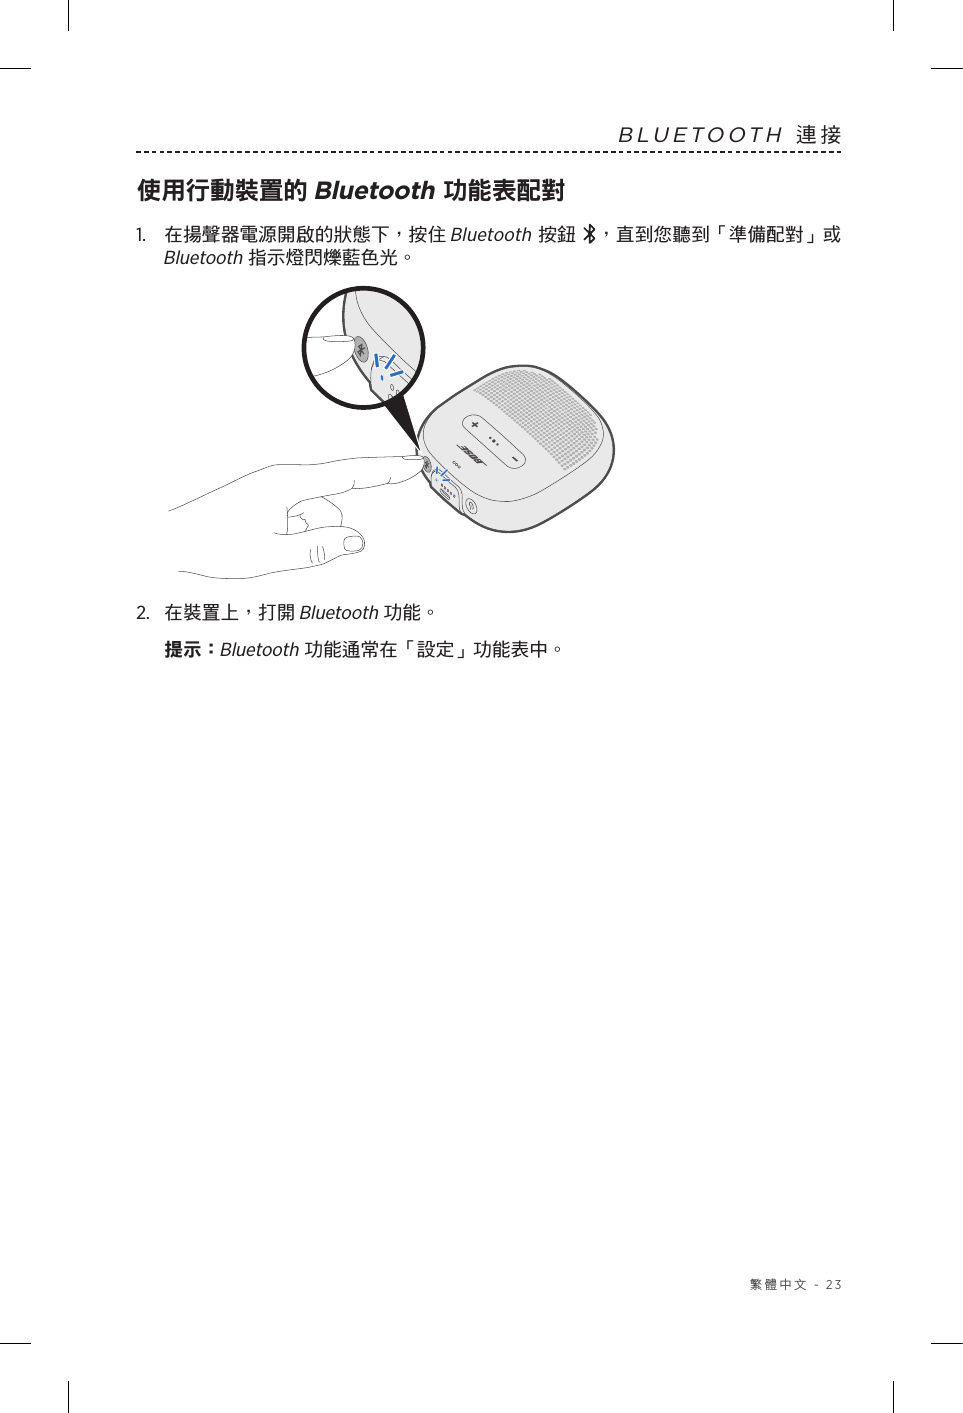  繁體中文 - 23BLUETOOTH 連接使用行動裝置的 Bluetooth 功能表配對1.   在揚聲器電源開啟的狀態下，按住Bluetooth 按鈕 ，直到您聽到「準備配對」或 Bluetooth 指示燈閃爍藍色光。2.  在裝置上，打開 Bluetooth 功能。提示：  Bluetooth 功能通常在「設定」功能表中。